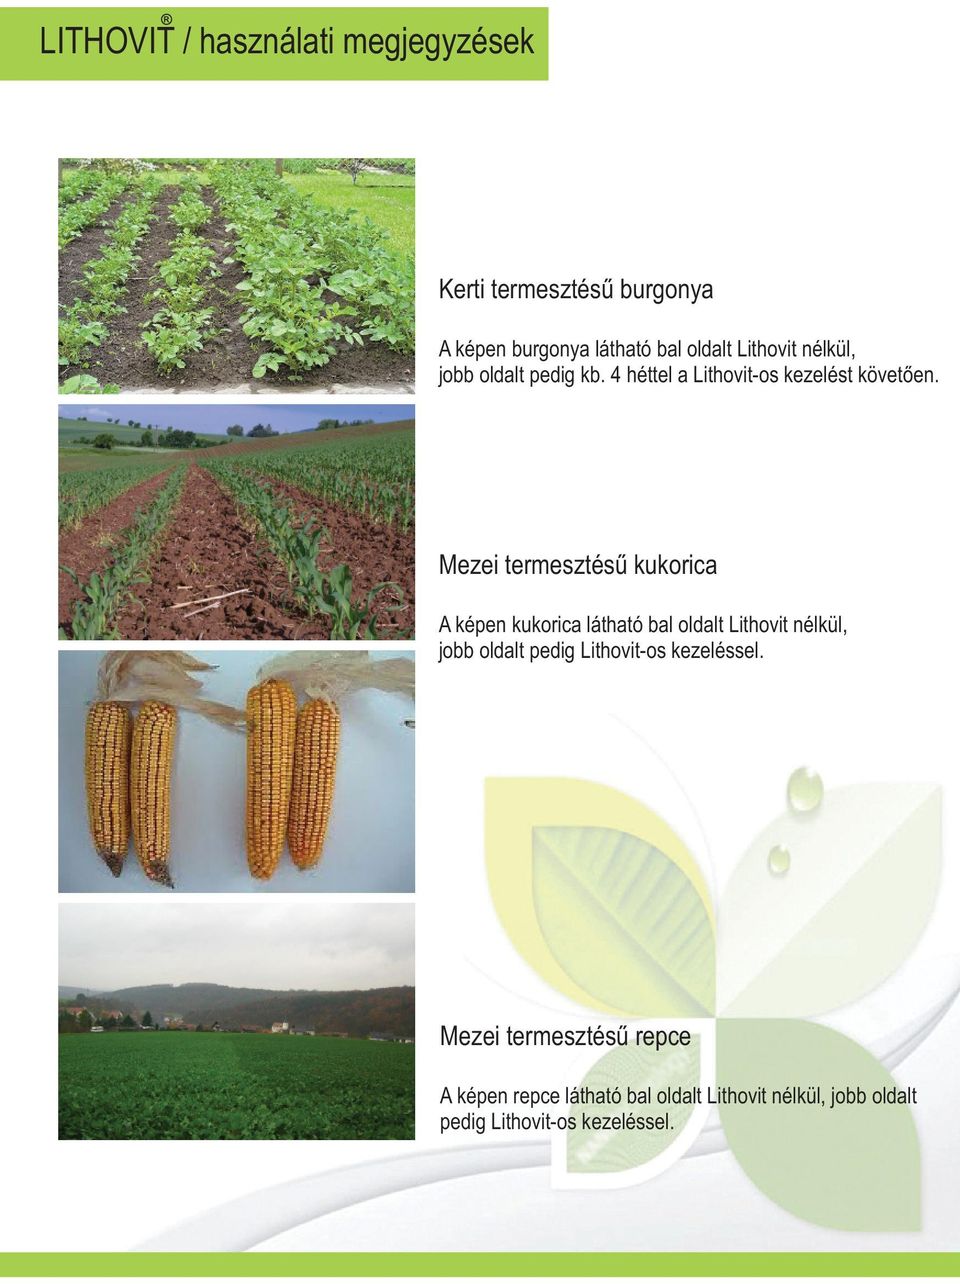 Mezei termesztésû kukorica A képen kukorica látható bal oldalt Lithovit nélkül, jobb oldalt pedig